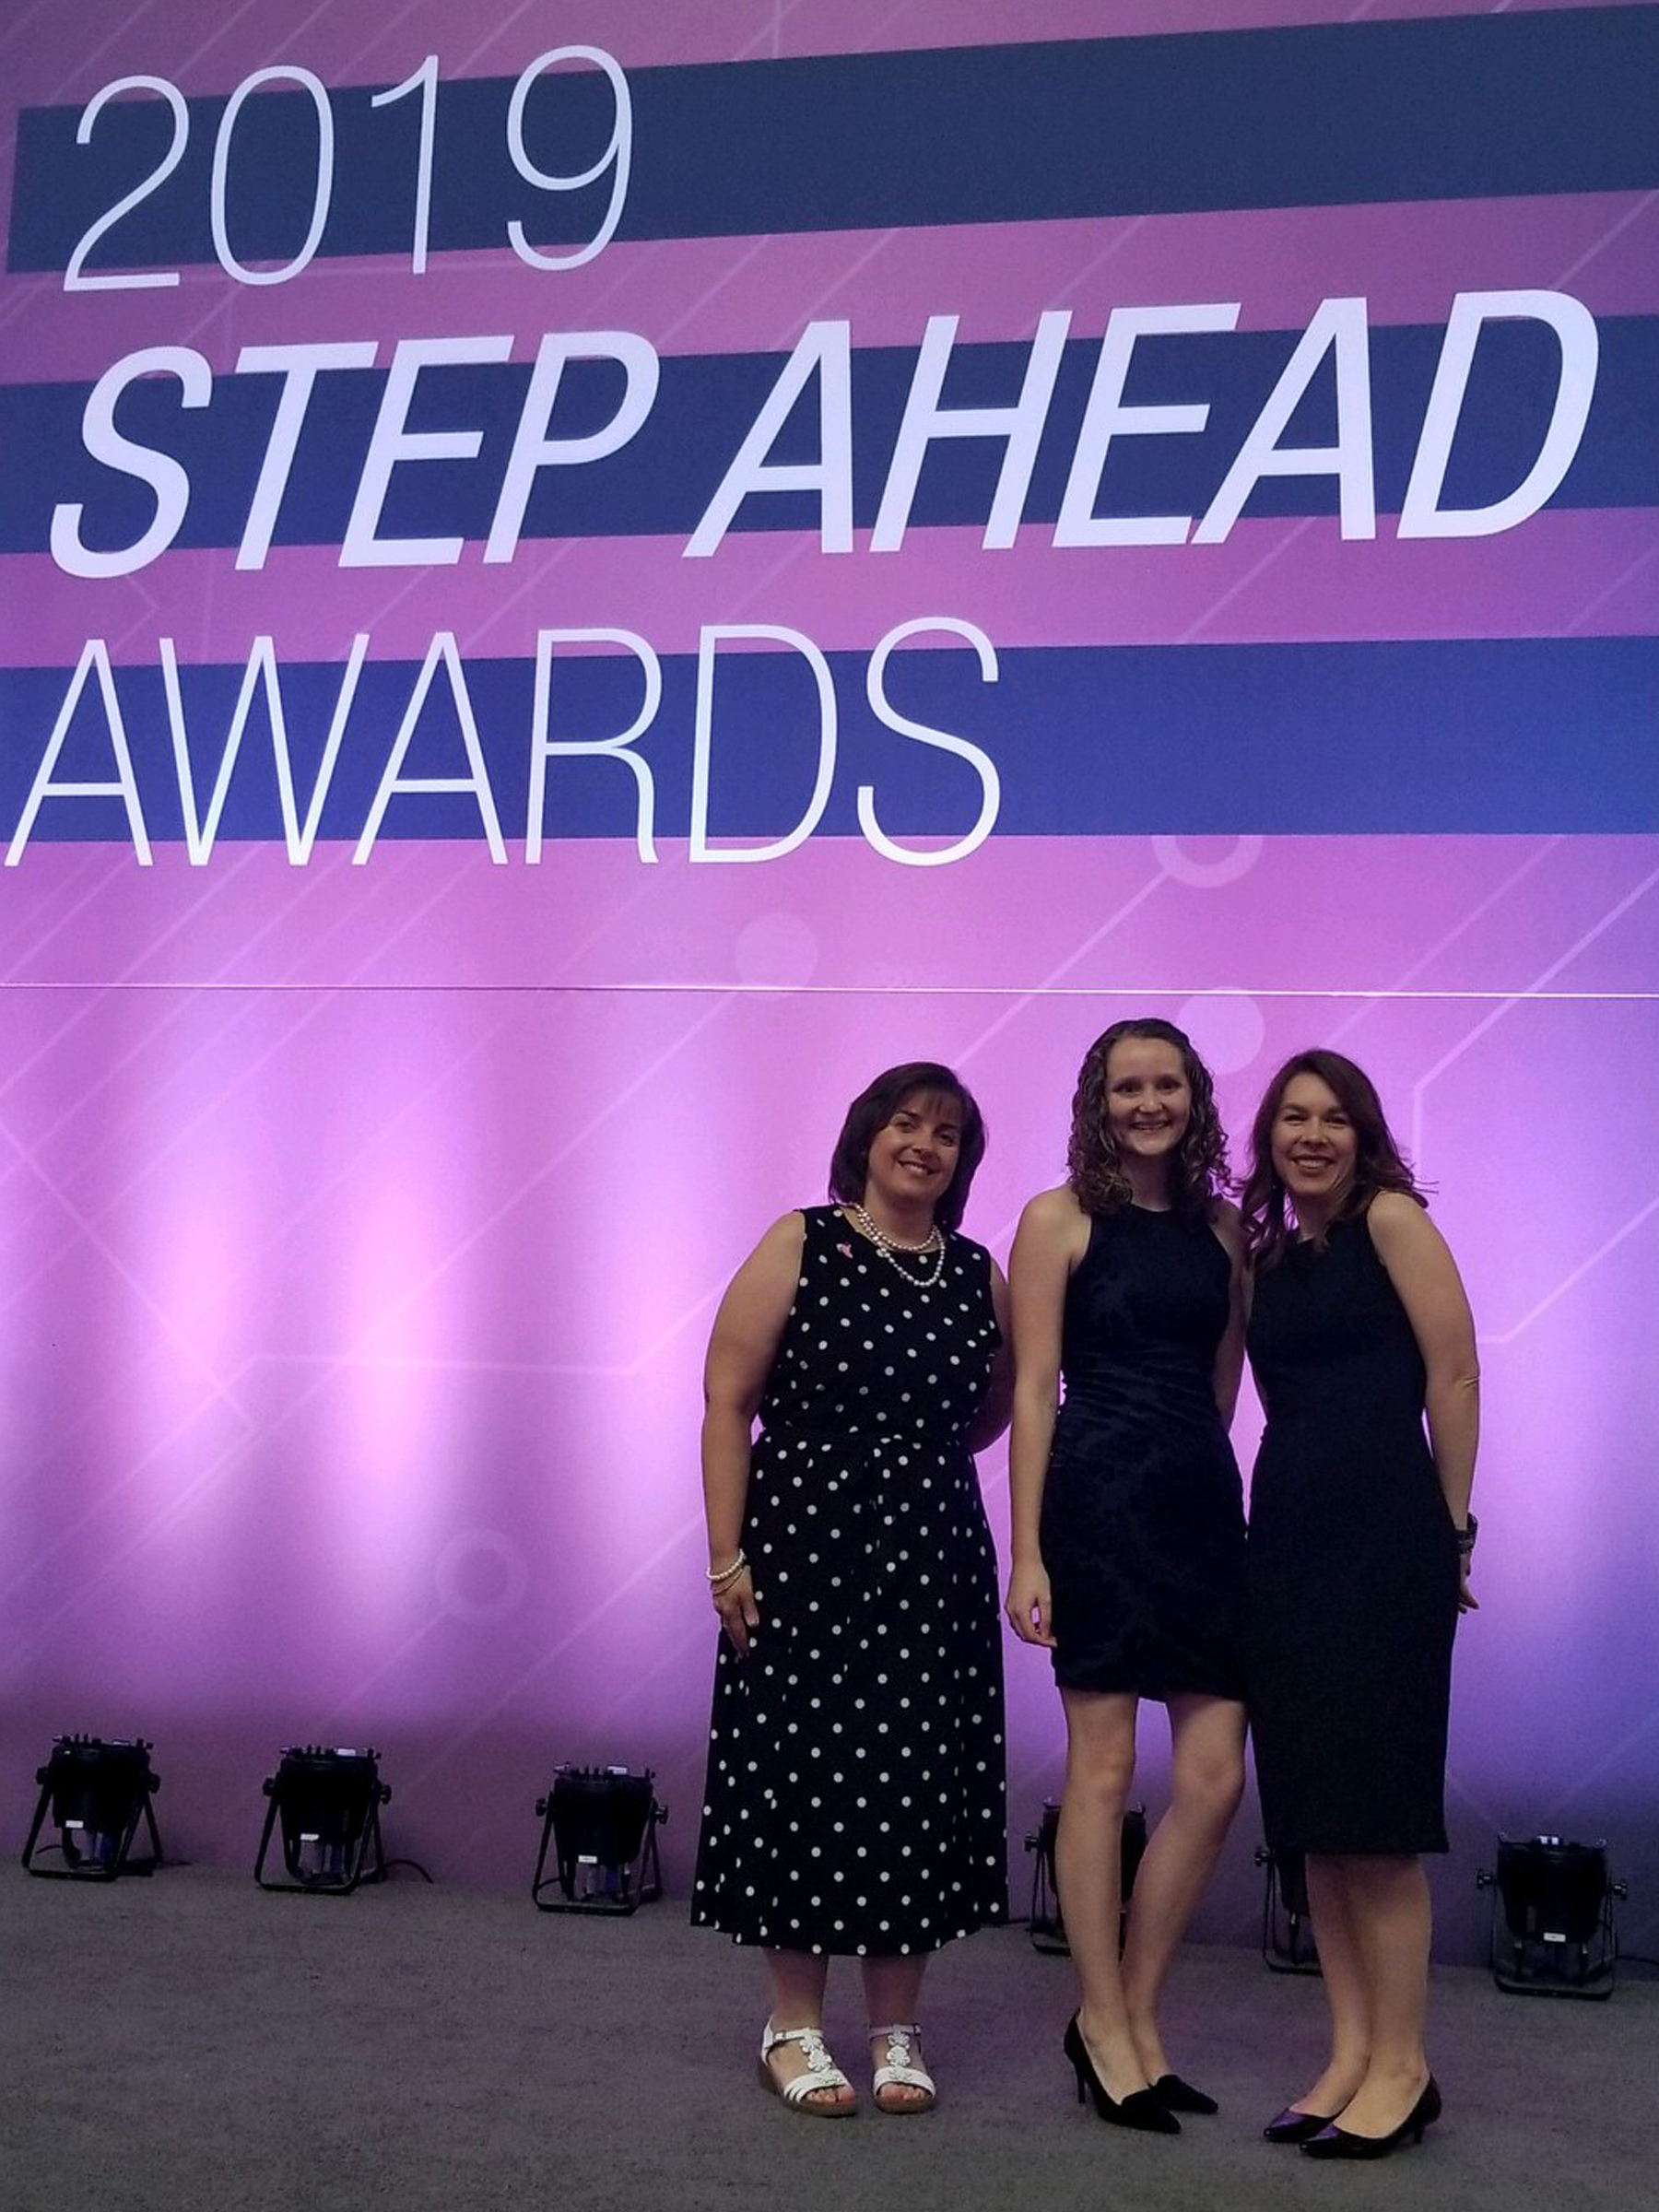 2019 Step Ahead awards